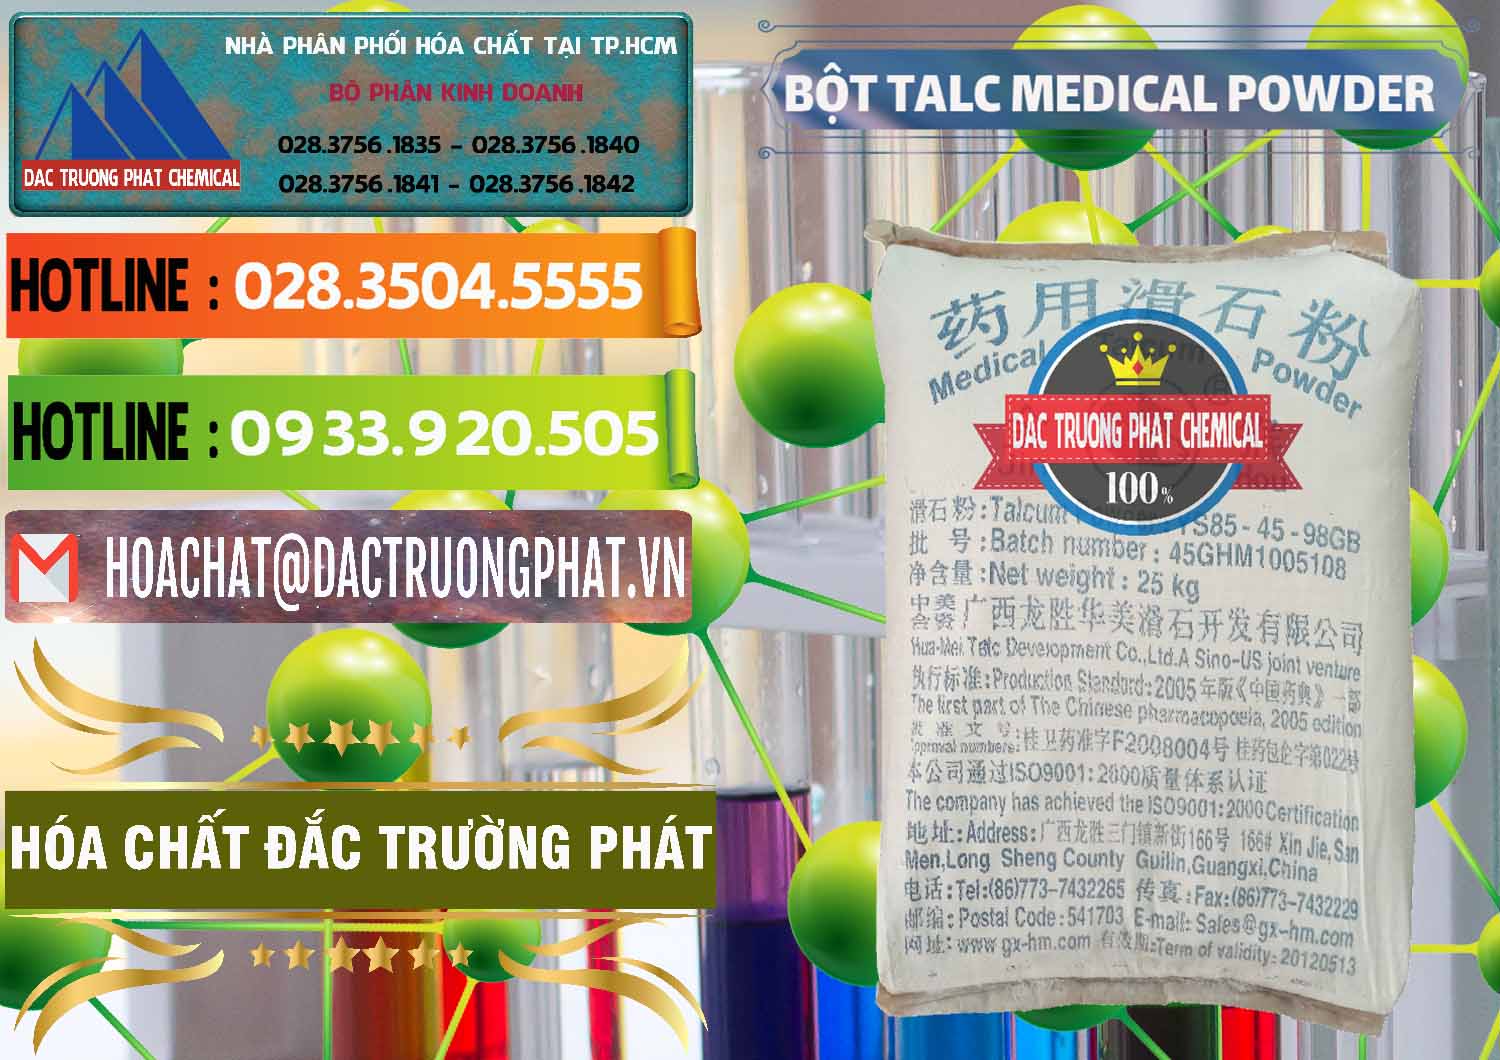 Cty kinh doanh ( bán ) Bột Talc Medical Powder Trung Quốc China - 0036 - Công ty chuyên kinh doanh ( phân phối ) hóa chất tại TP.HCM - cungcaphoachat.com.vn